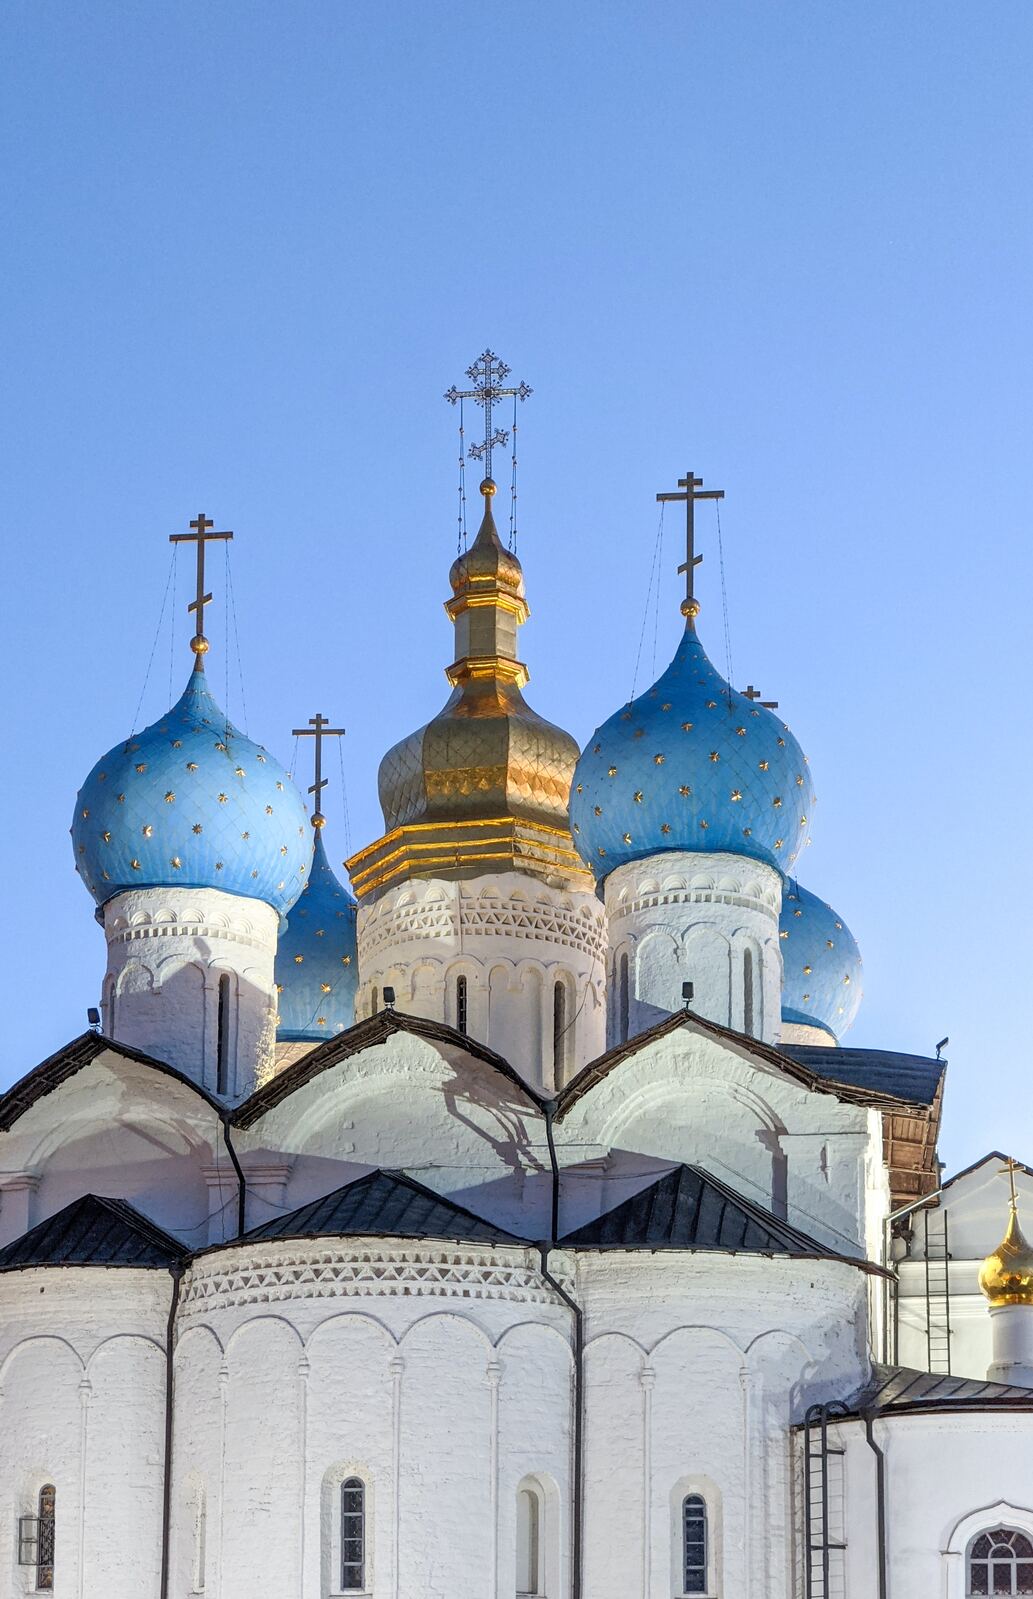 Image of Kazan Kremlin by Team PhotoHound